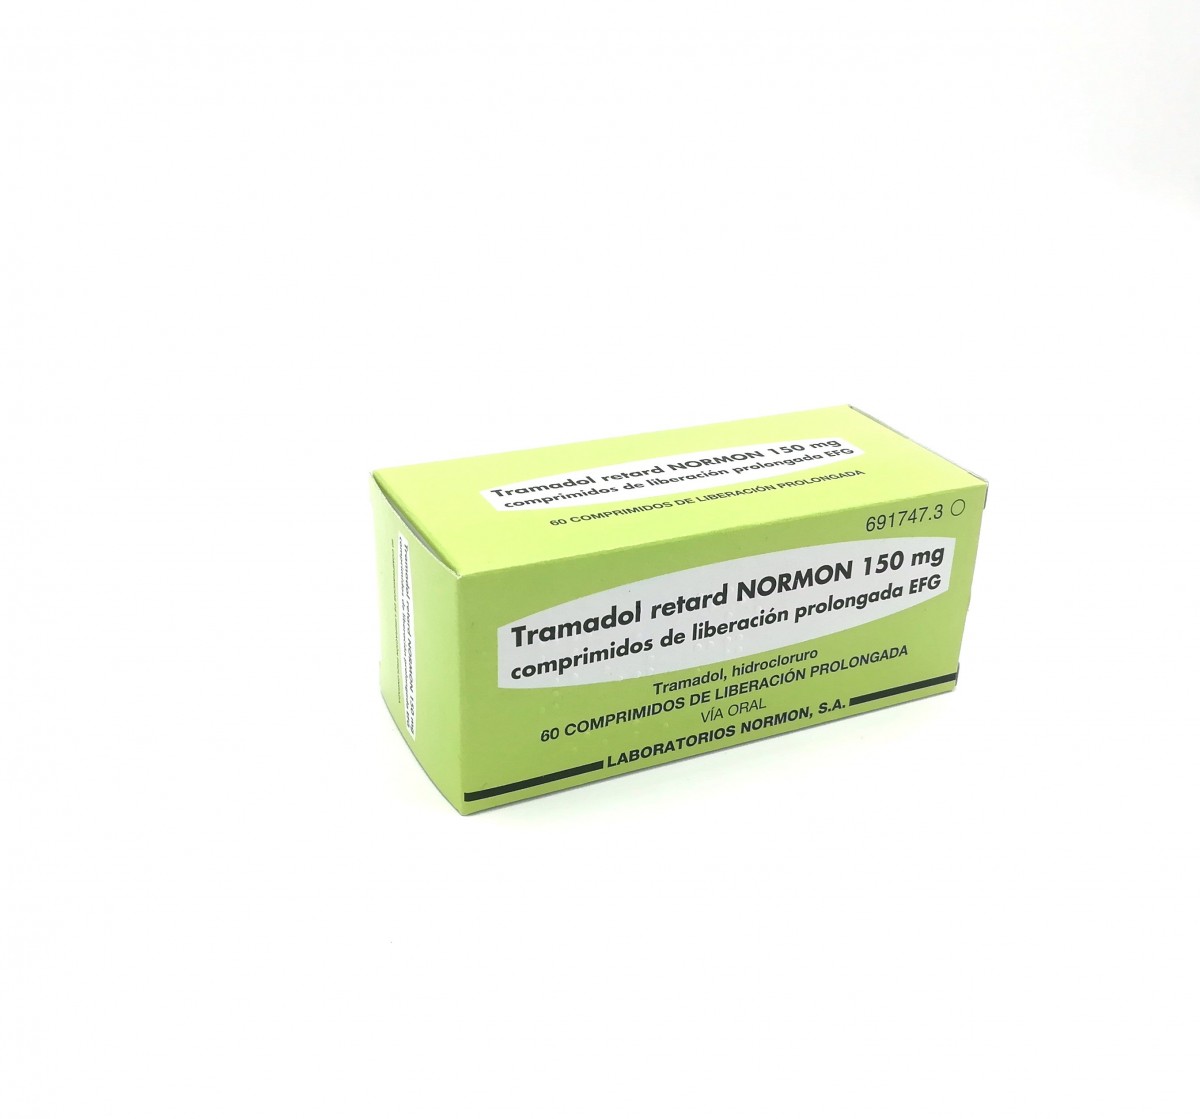 TRAMADOL RETARD NORMON 150 mg COMPRIMIDOS DE LIBERACION PROLONGADA EFG, 20 comprimidos fotografía del envase.